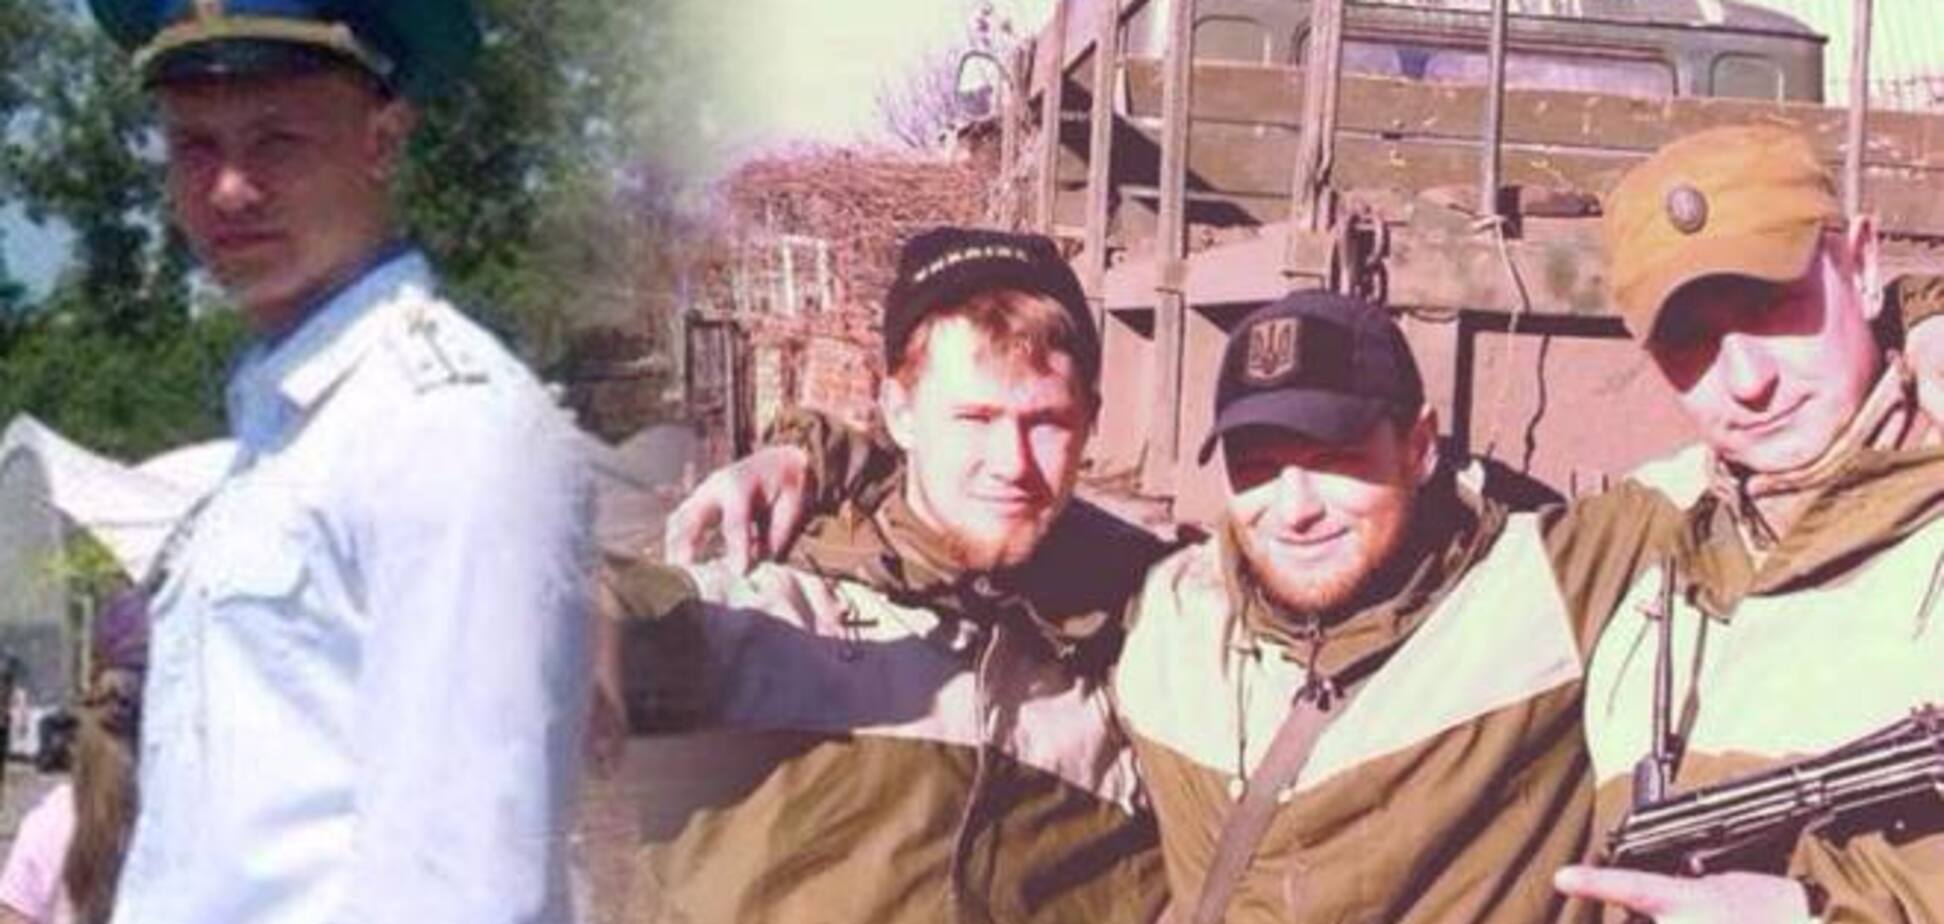 Экс-агент ФСБ 'киборг' Богданов рассказал, как стал 'правосеком'